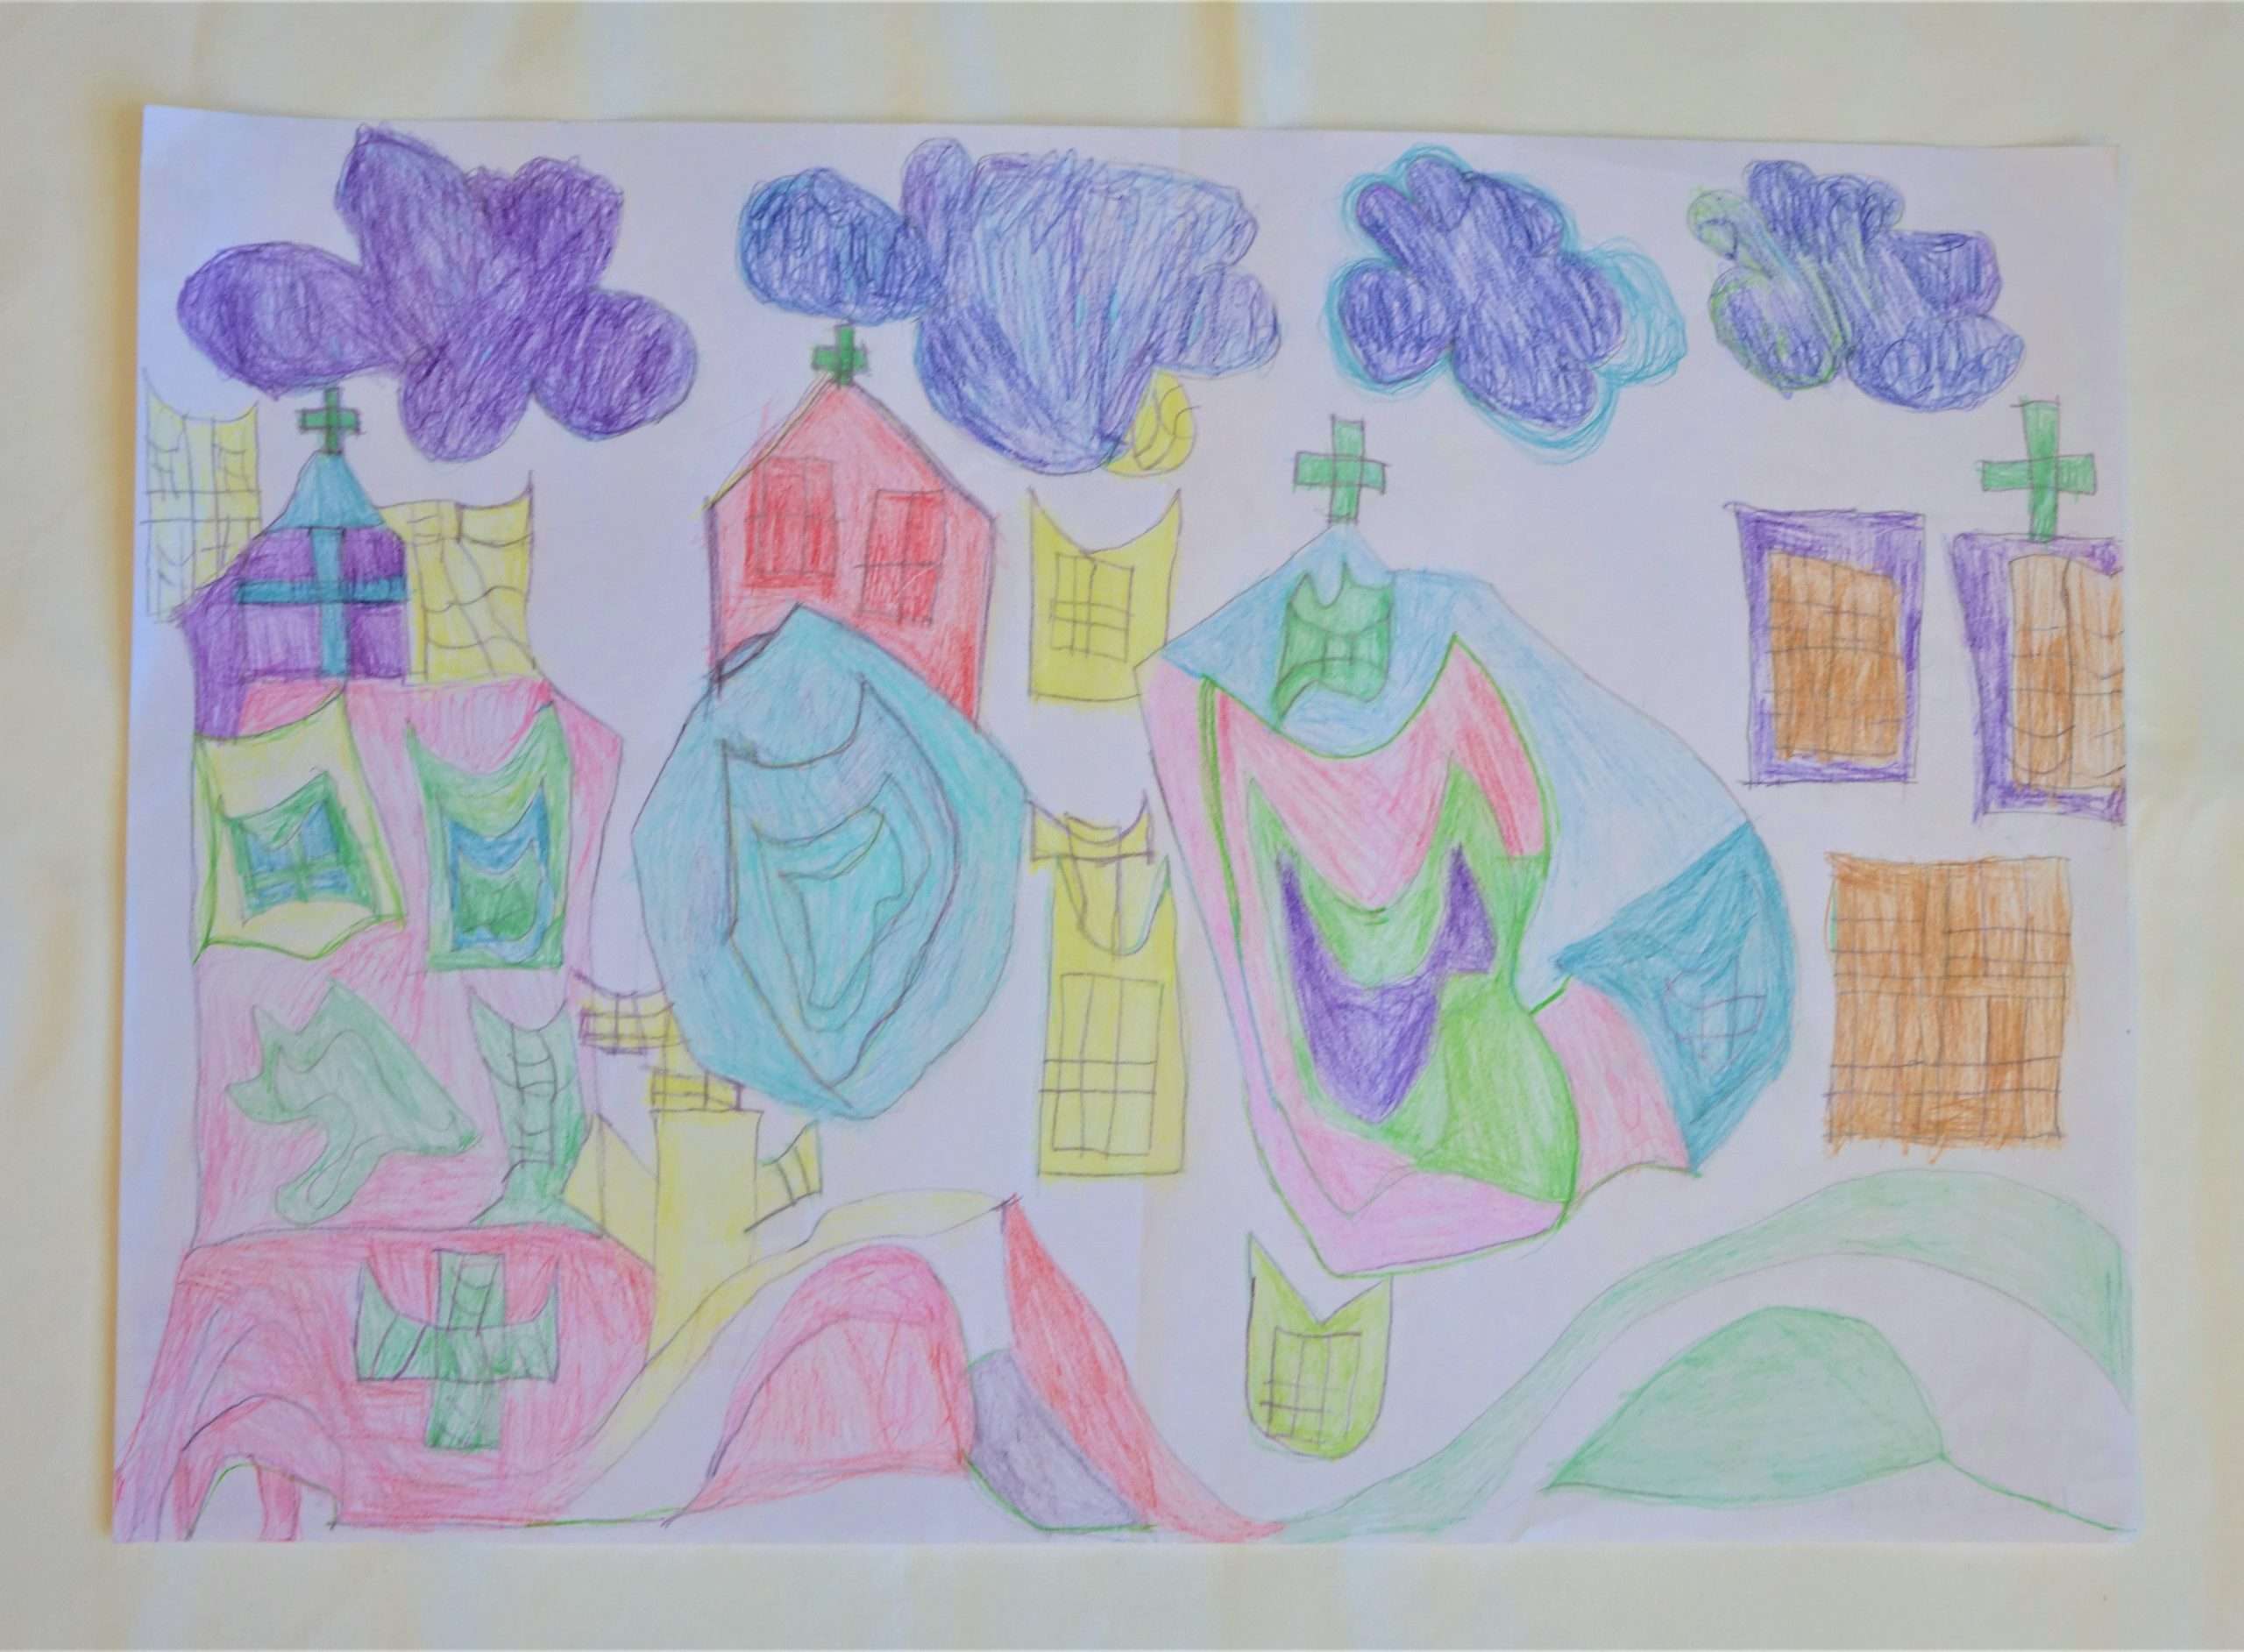 A színes ceruzákkal készített rajz kastélyokat ábrázol. A kastélyokon színes formák, tetejükön keresztek láthatók. A kép felső részén 4 kékes, lilás felhő úszik.